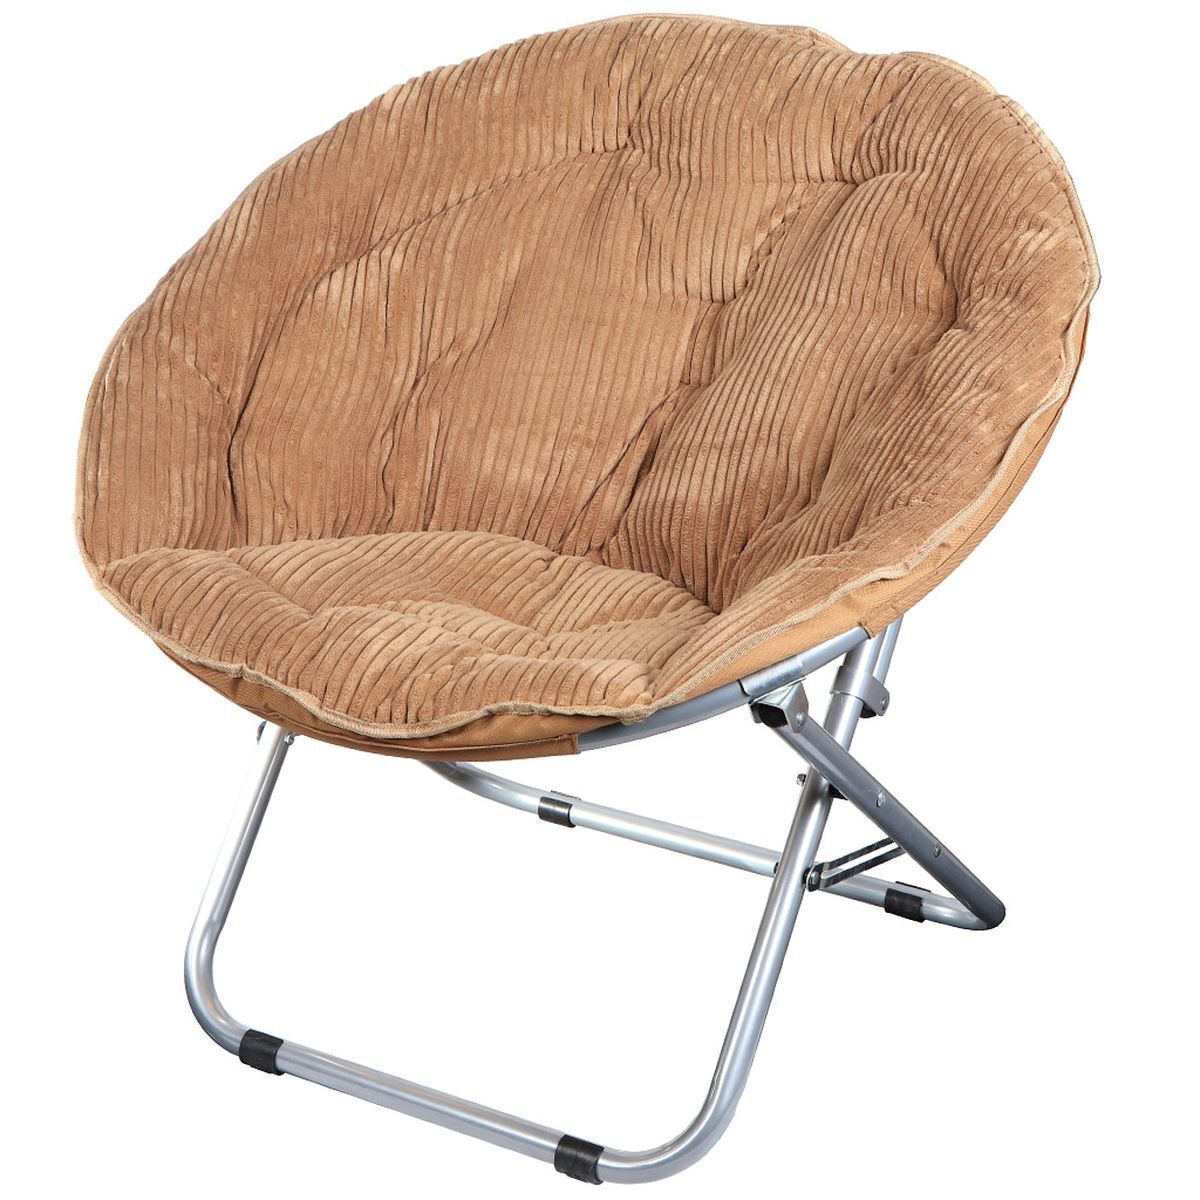 Купить складные сиденья. Кресло складное 80х84х78 см, гриб комфорт. Кресло складное Грин дейс. Кресло складное гриб комфорт вельвет. Кресло складное гриб Green Day.